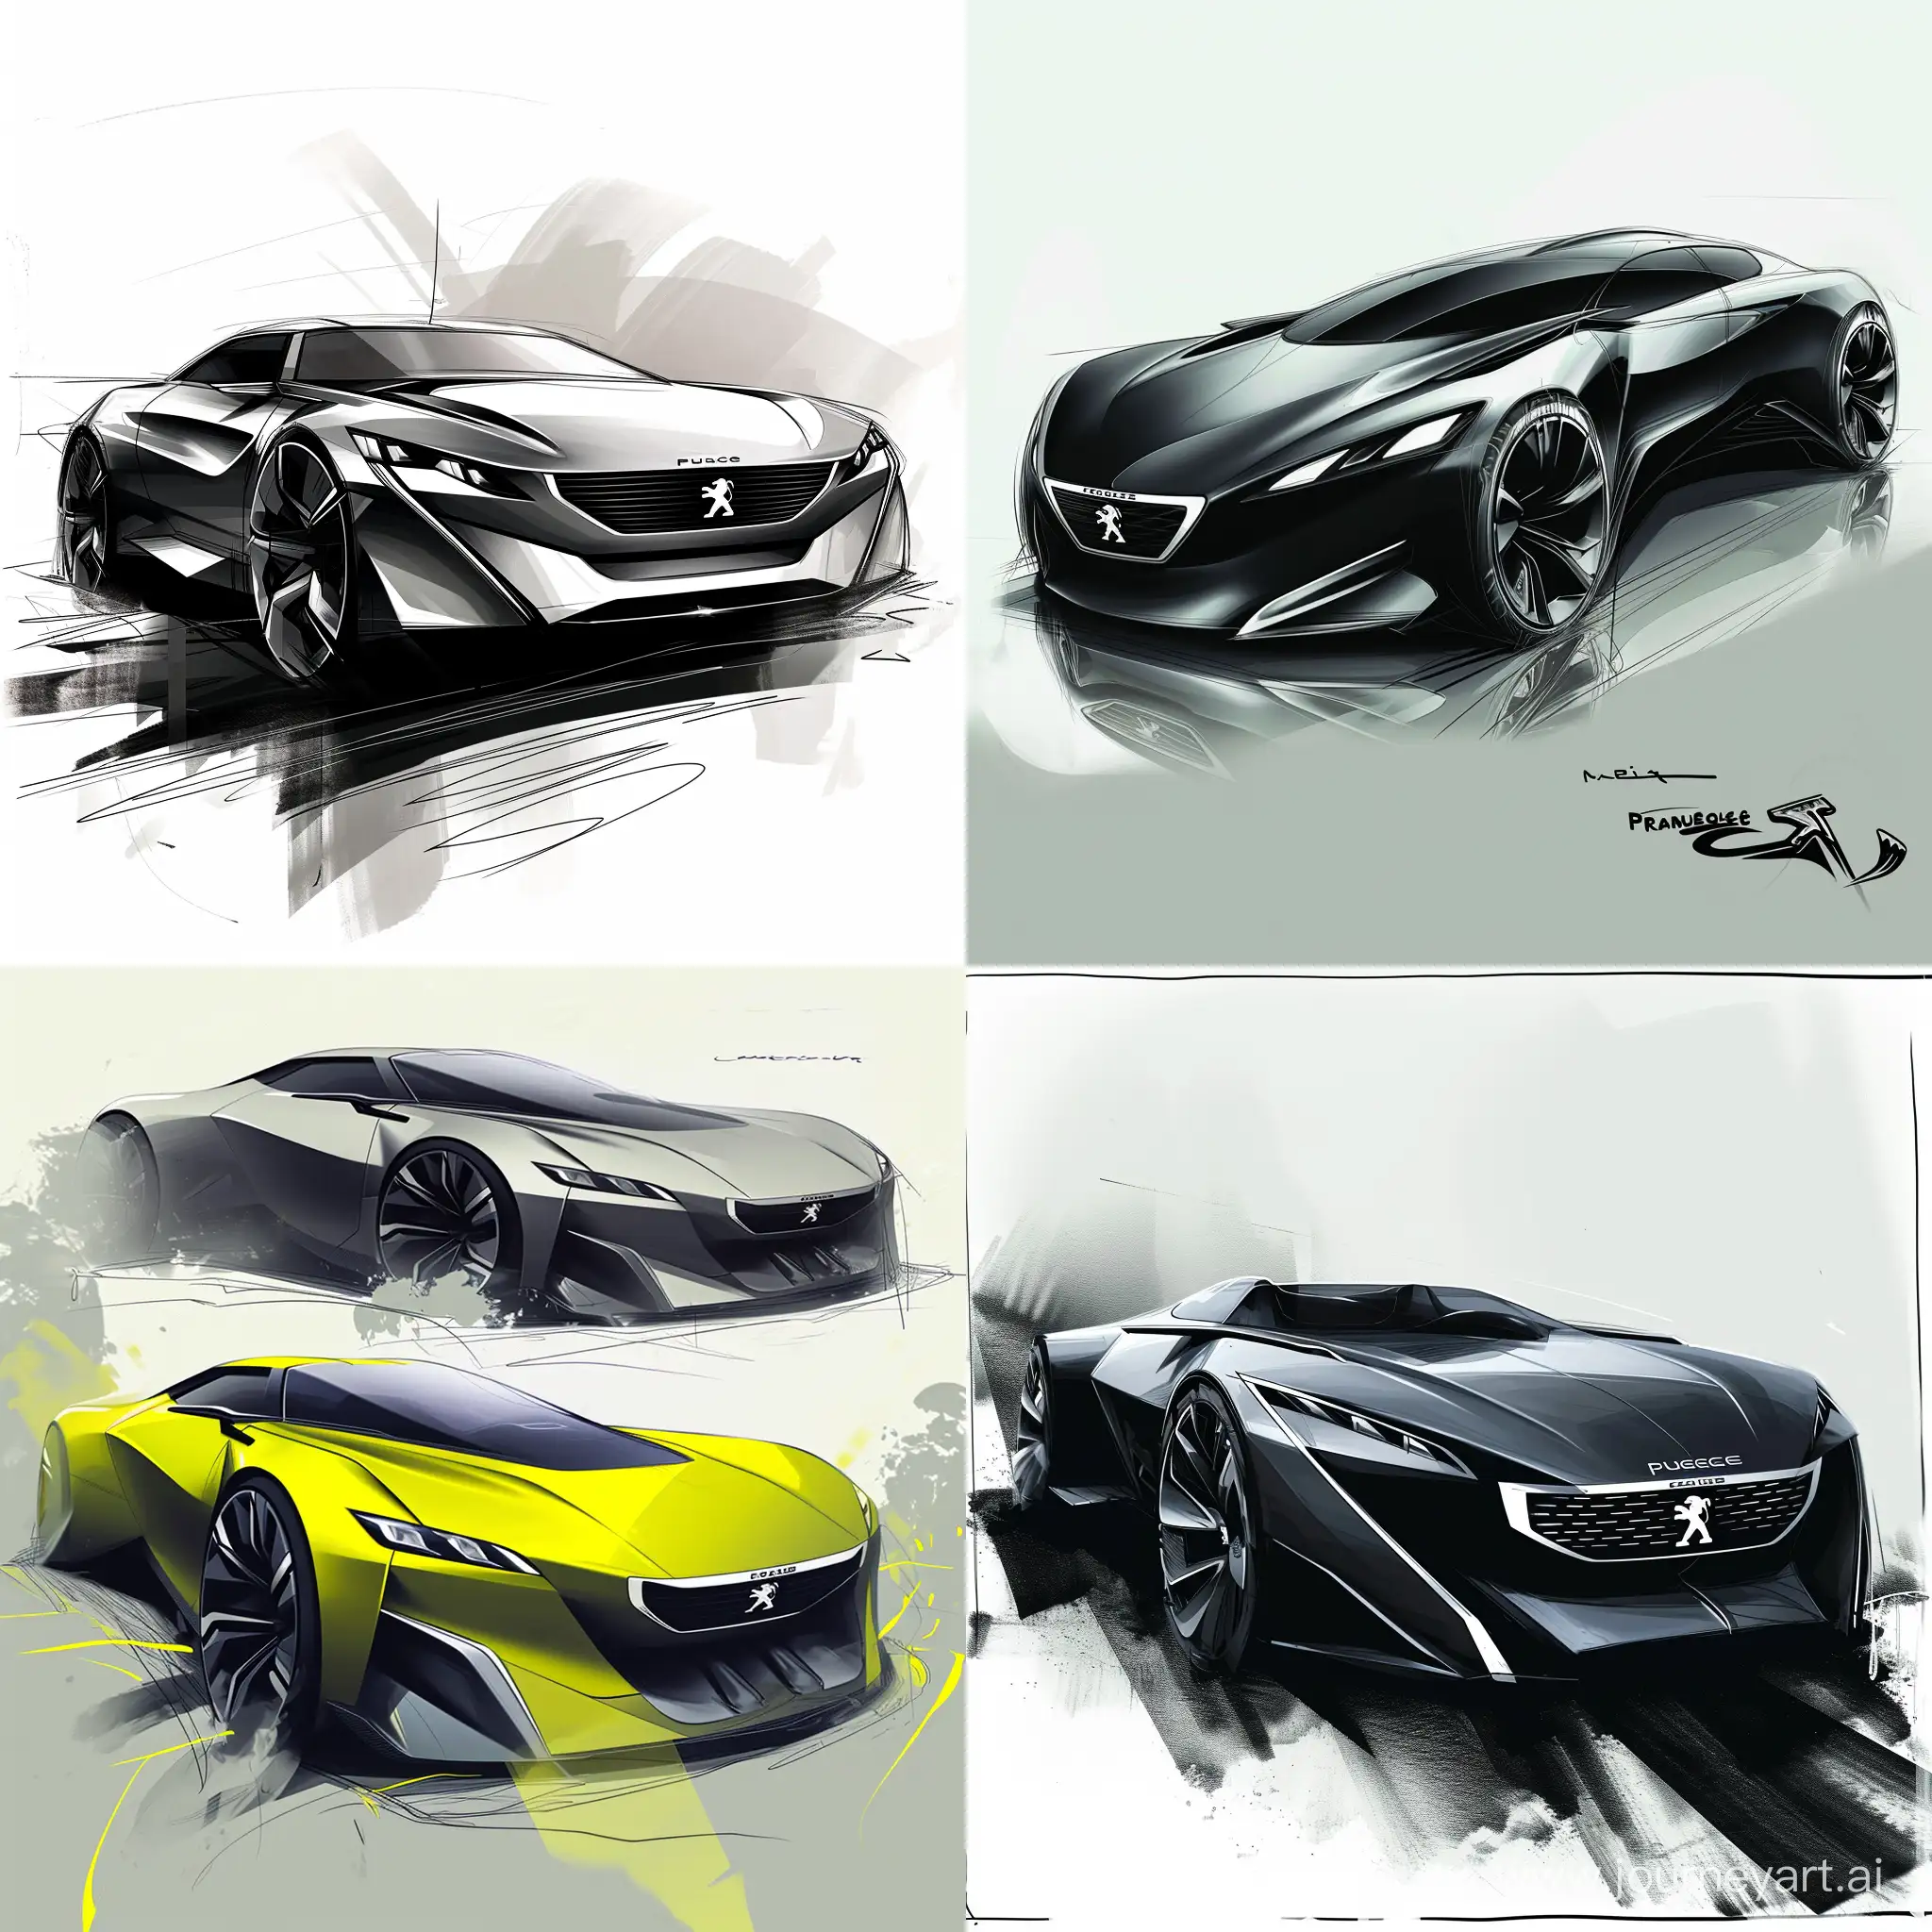 Peugeot-Car-Design-Sketches-V6-Model-No-967-in-11-Aspect-Ratio